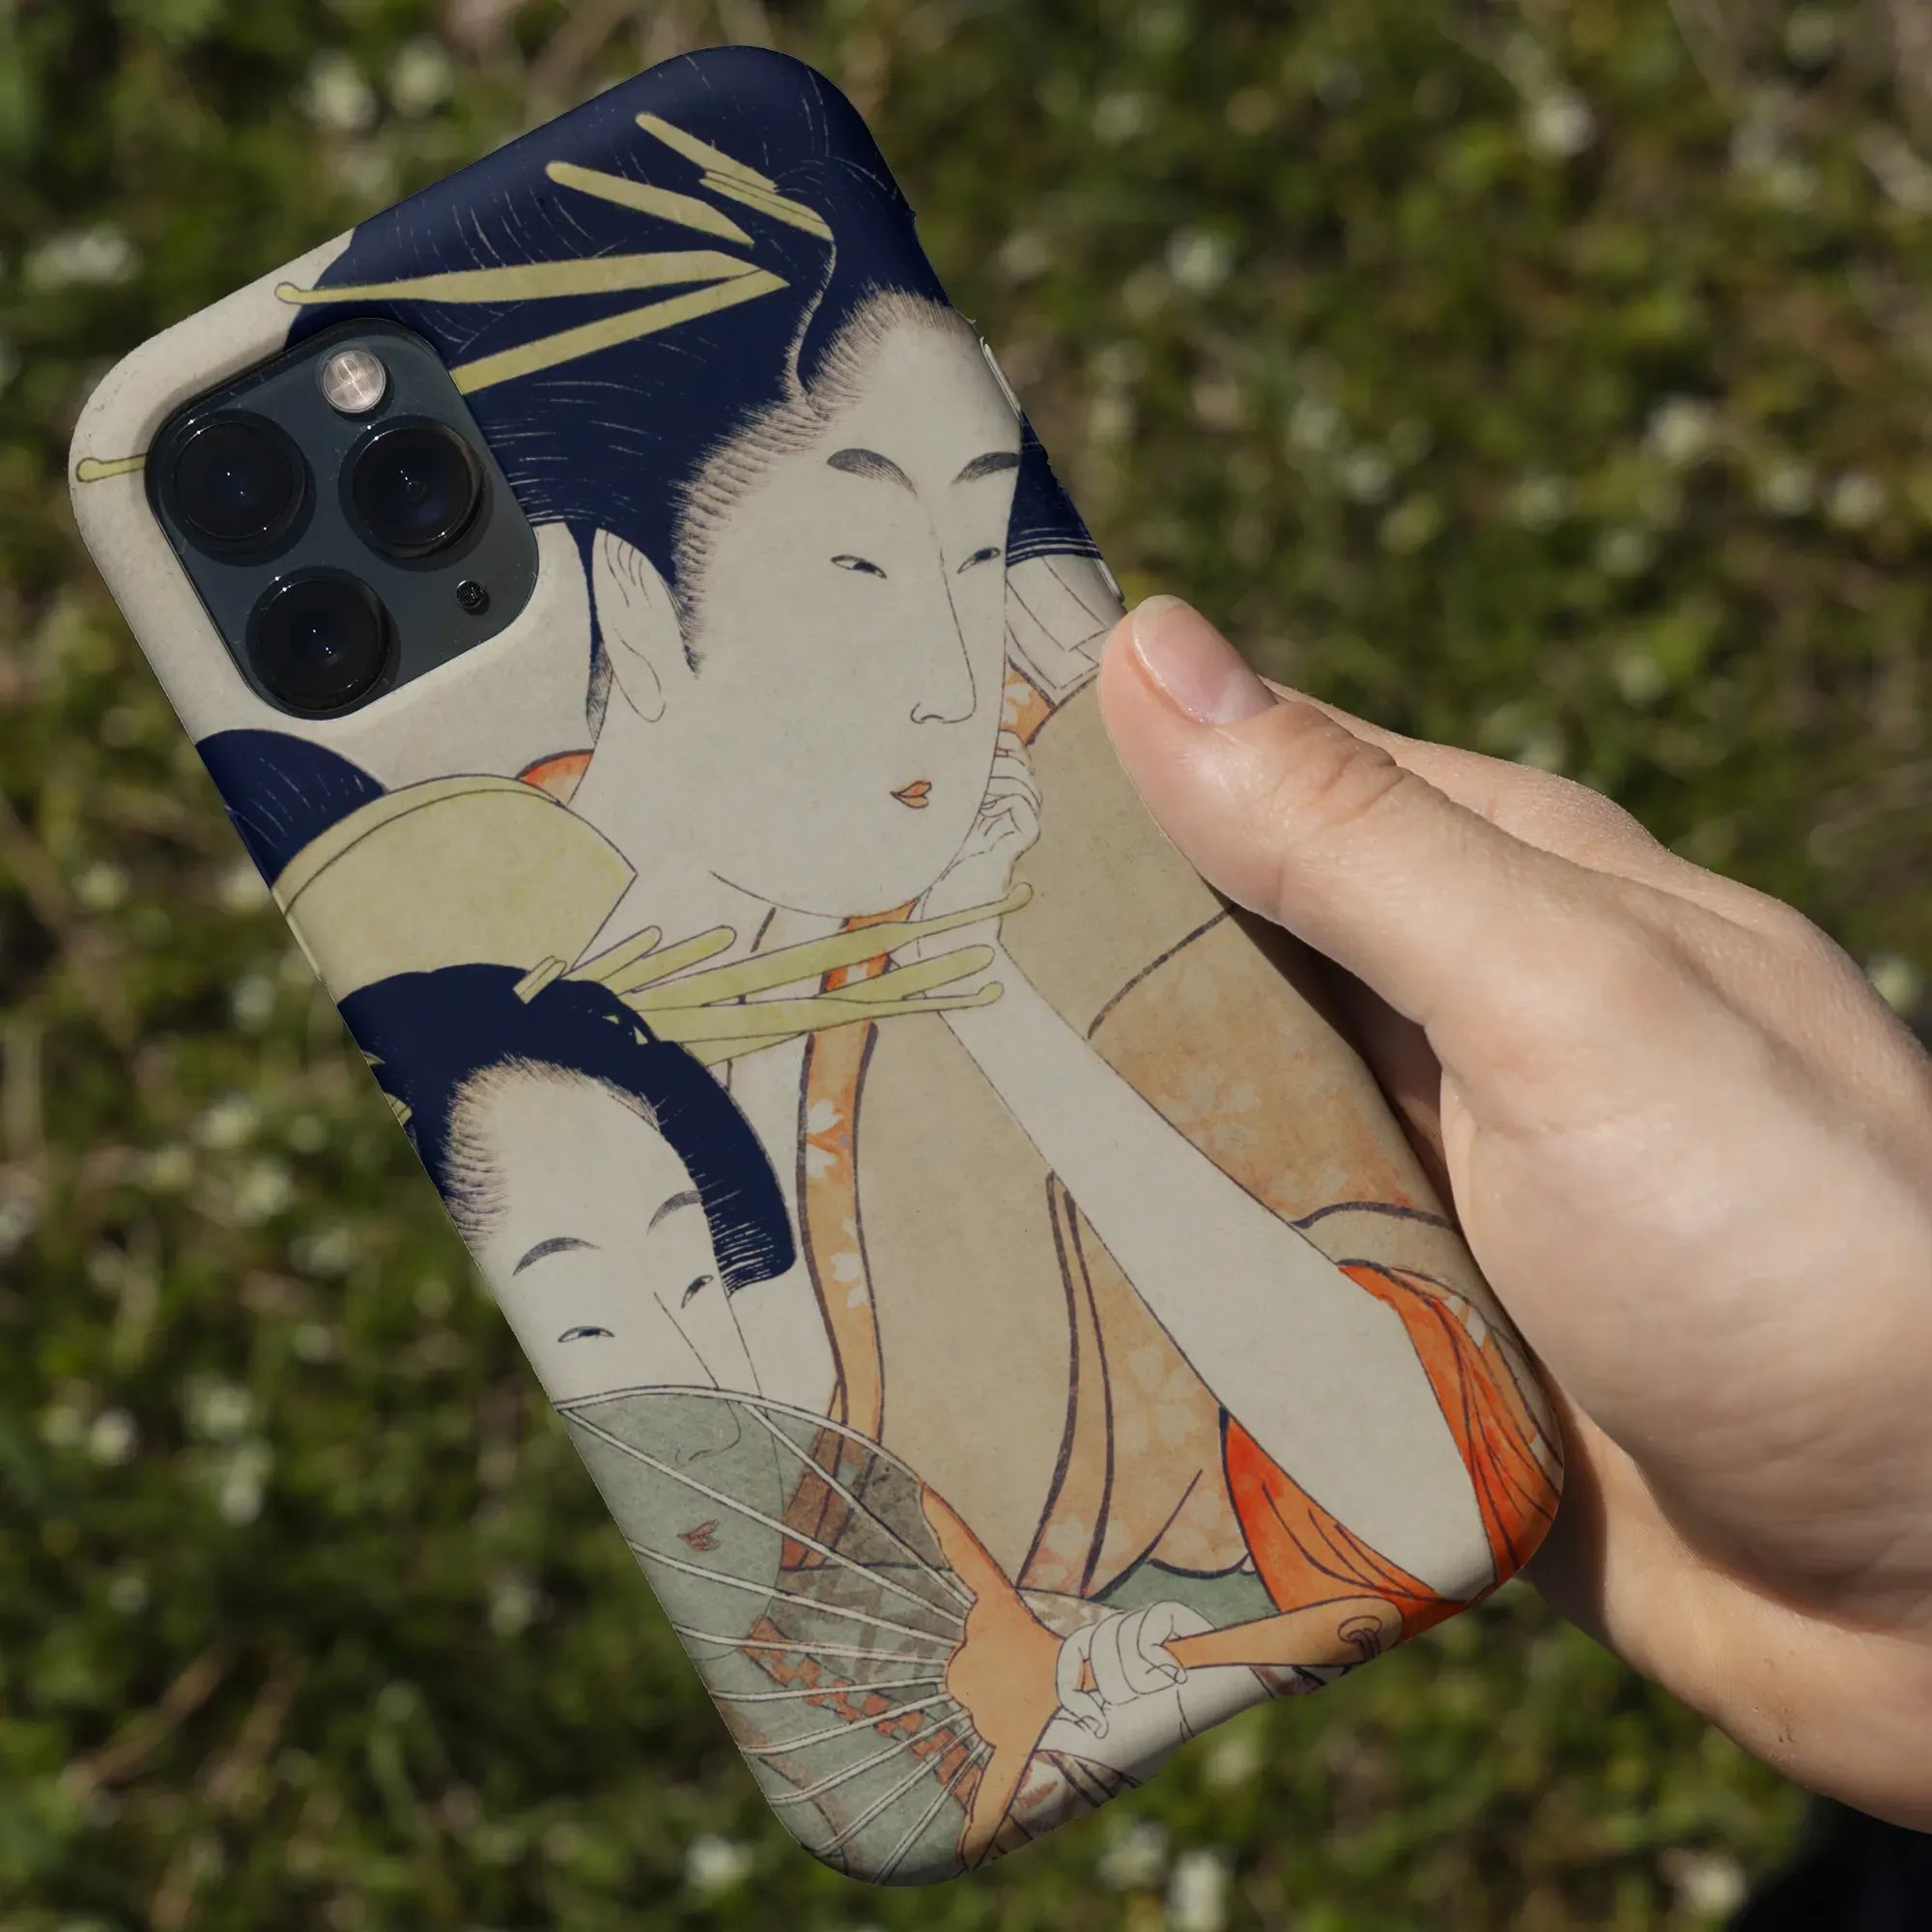 Chojiya Japanese Aesthetic Art Phone Case - Utamaro Kitagawa - Mobile Phone Cases - Aesthetic Art